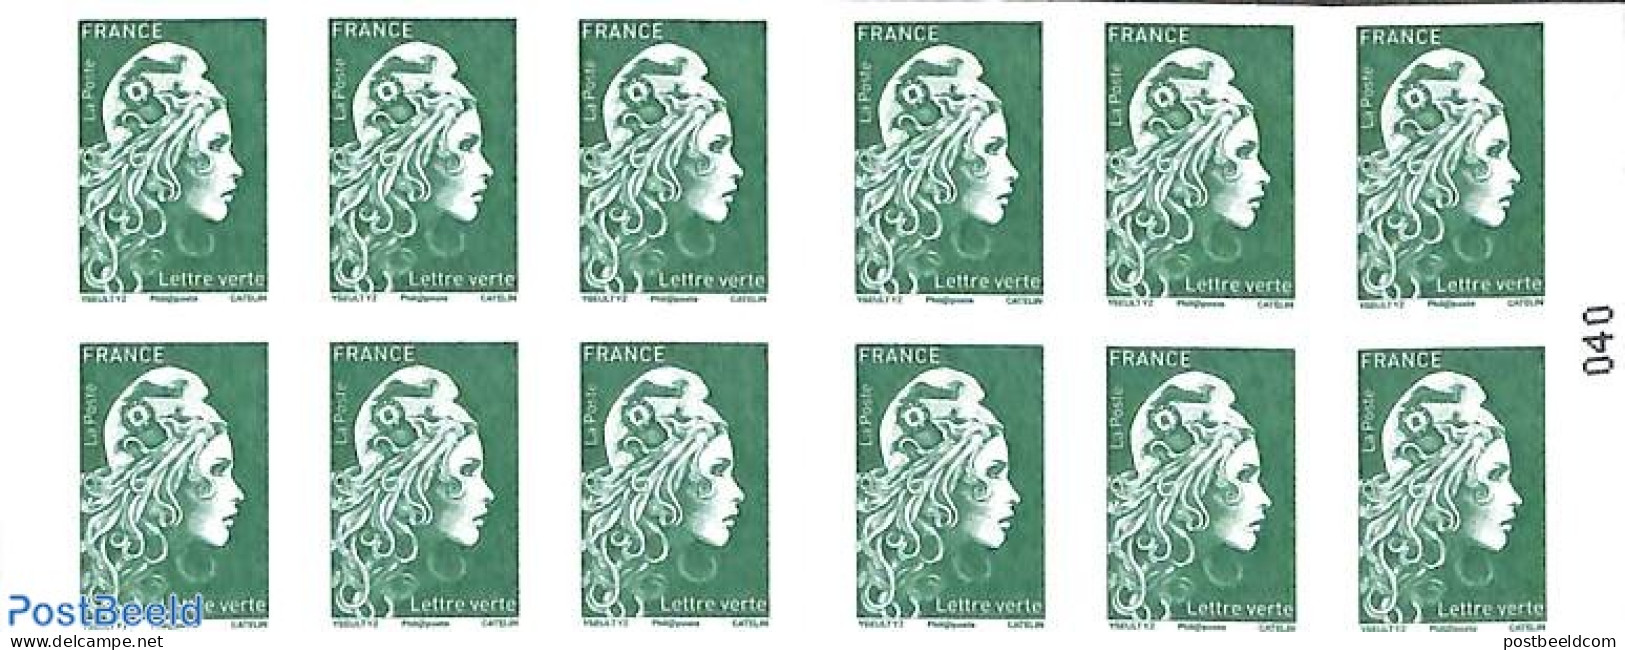 France 2018 Definitives Booklet, Mint NH, Stamp Booklets - Nuevos